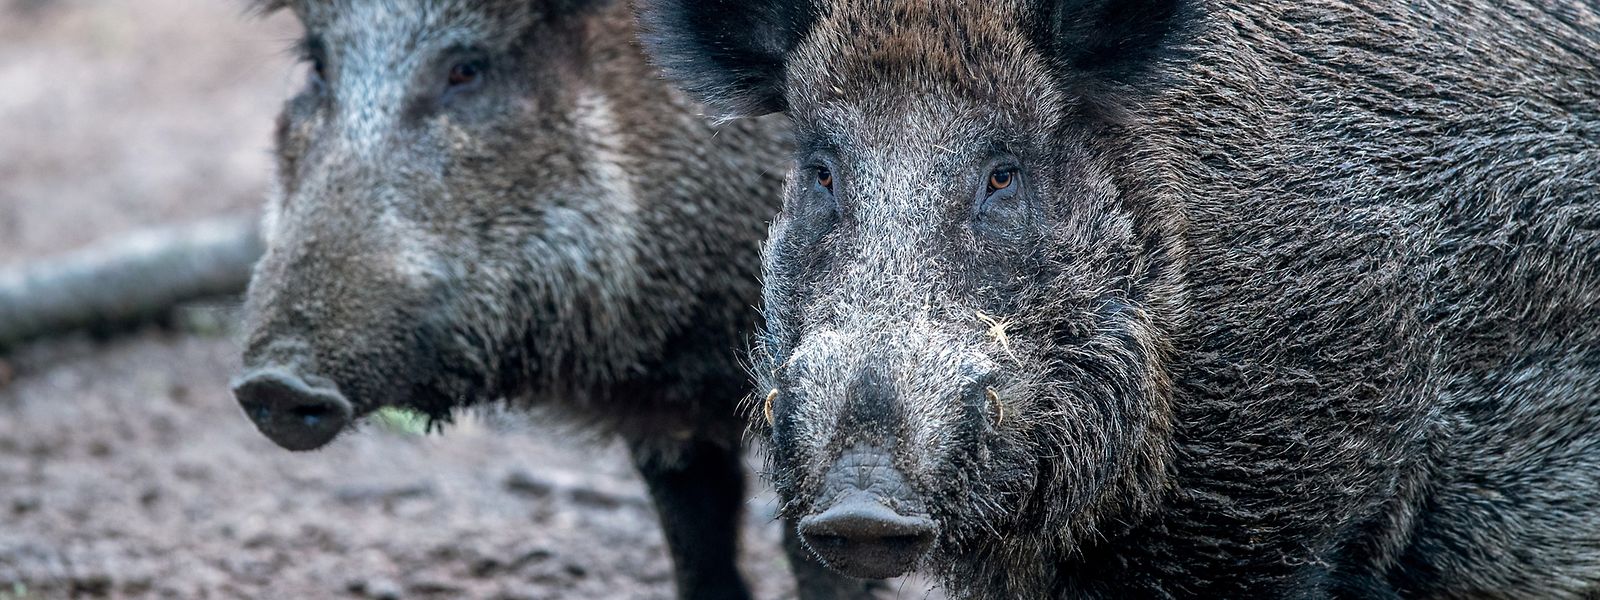 Die Afrikanische Schweinepest ist eine schwere Virusinfektion, die ausschließlich Schweine, also Wild- und Hausschweine, betrifft und für sie tödlich sein kann.